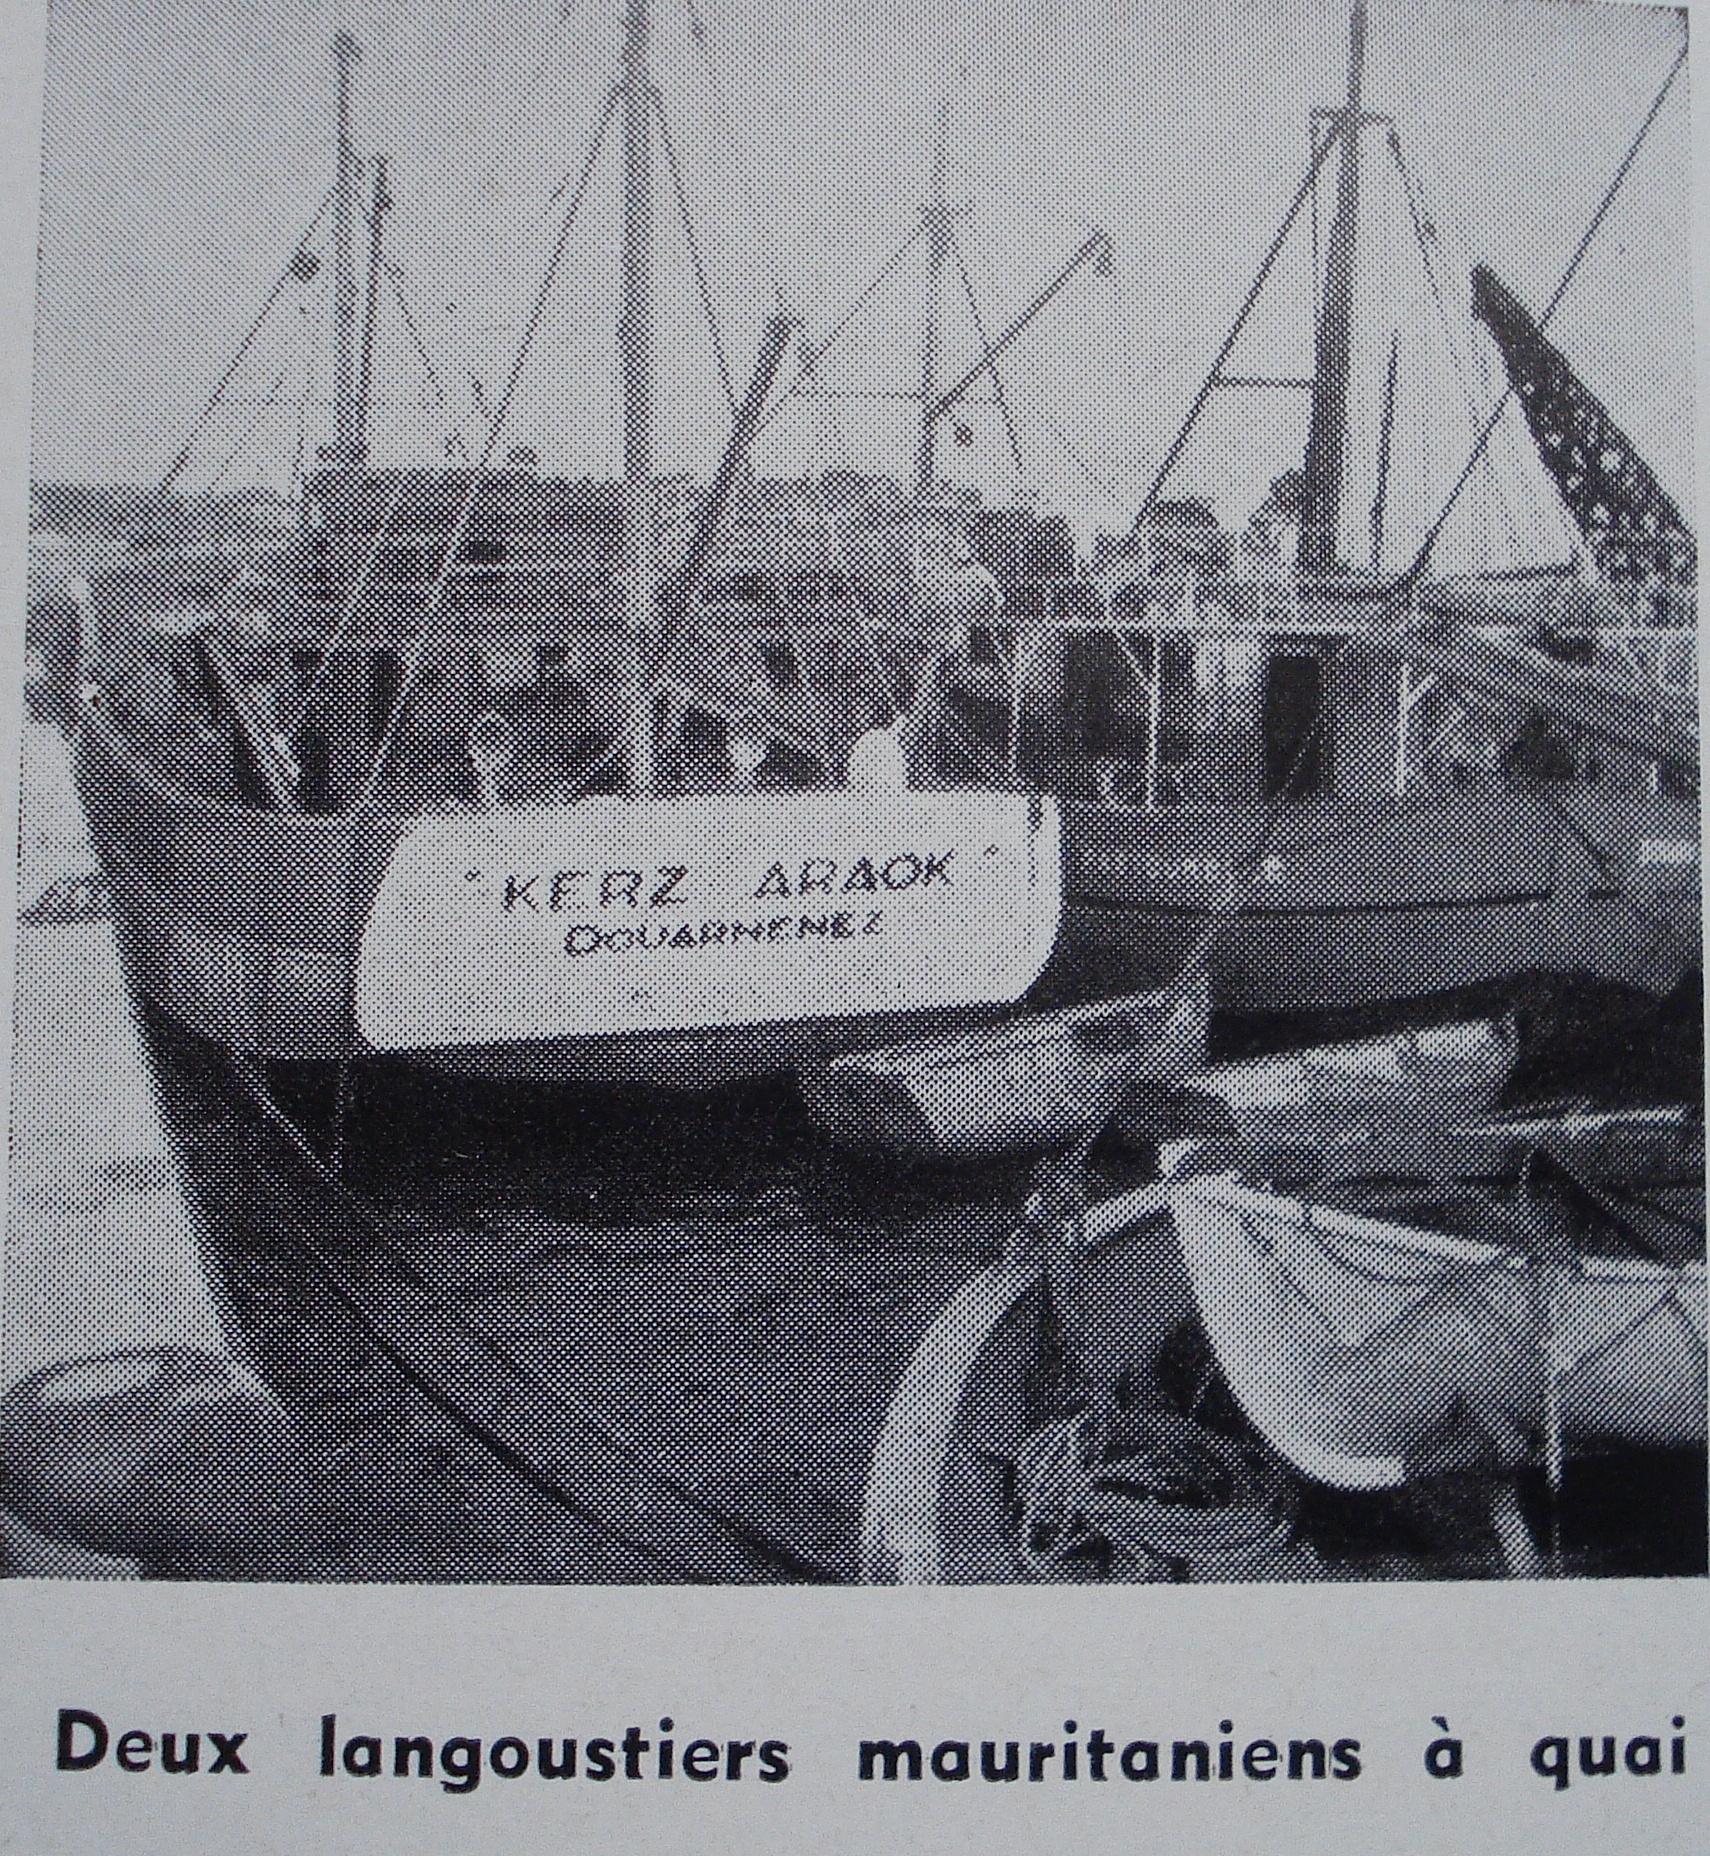 Pêche Maritime 1961 08 01. Pastourelle à droite.